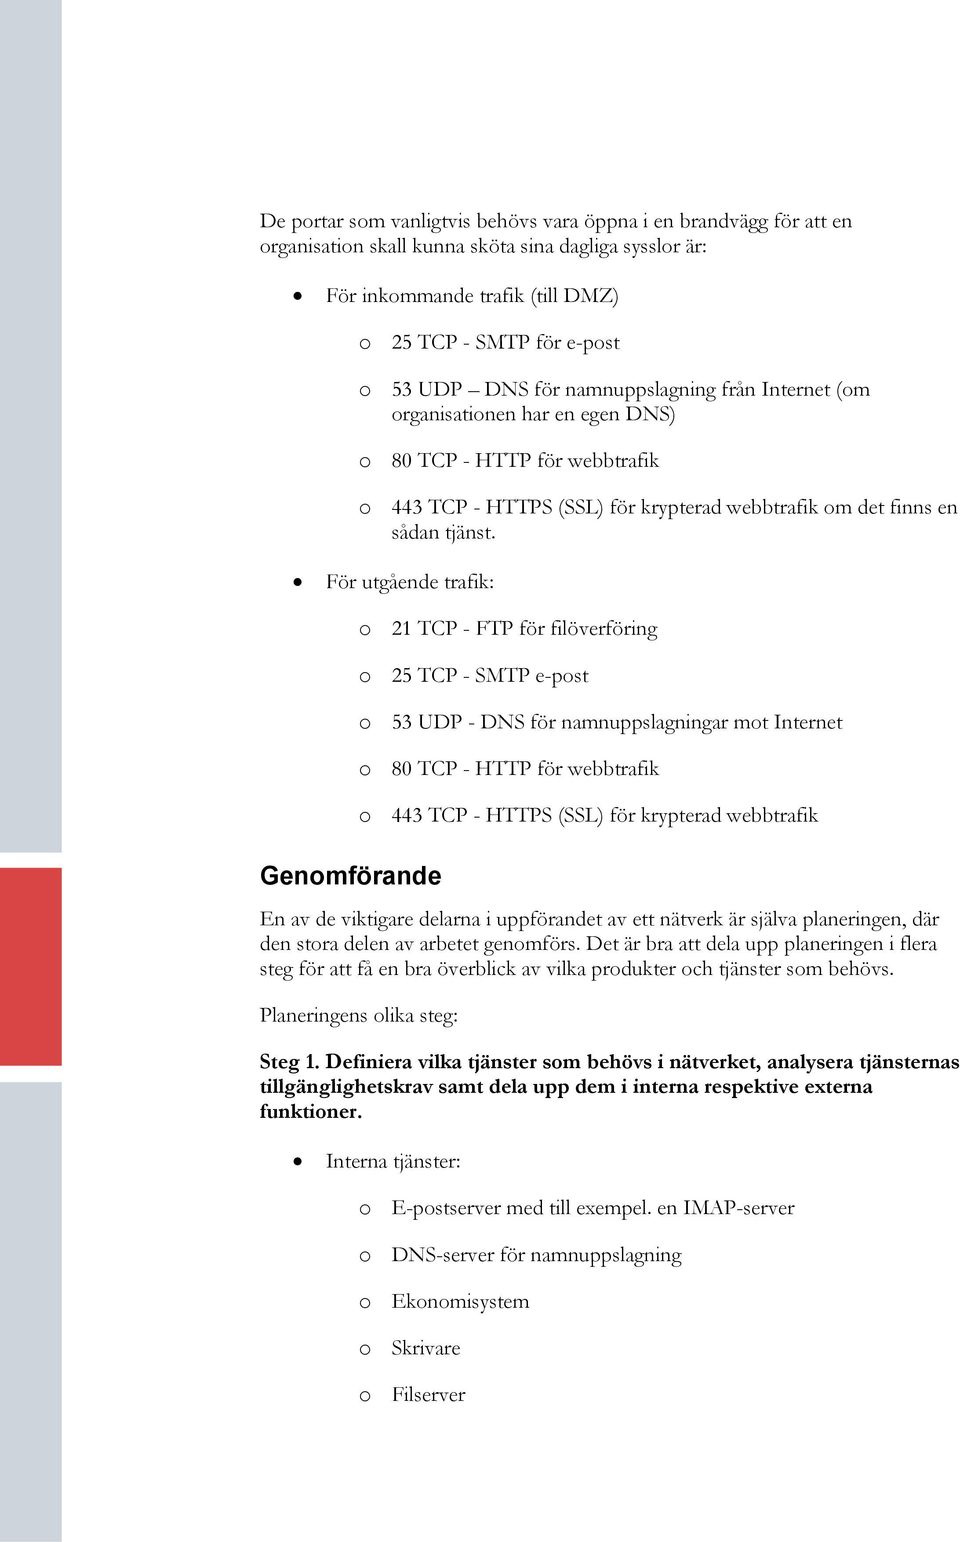 För utgående trafik: Genomförande o 21 TCP - FTP för filöverföring o 25 TCP - SMTP e-post o 53 UDP - DNS för namnuppslagningar mot Internet o 80 TCP - HTTP för webbtrafik o 443 TCP - HTTPS (SSL) för